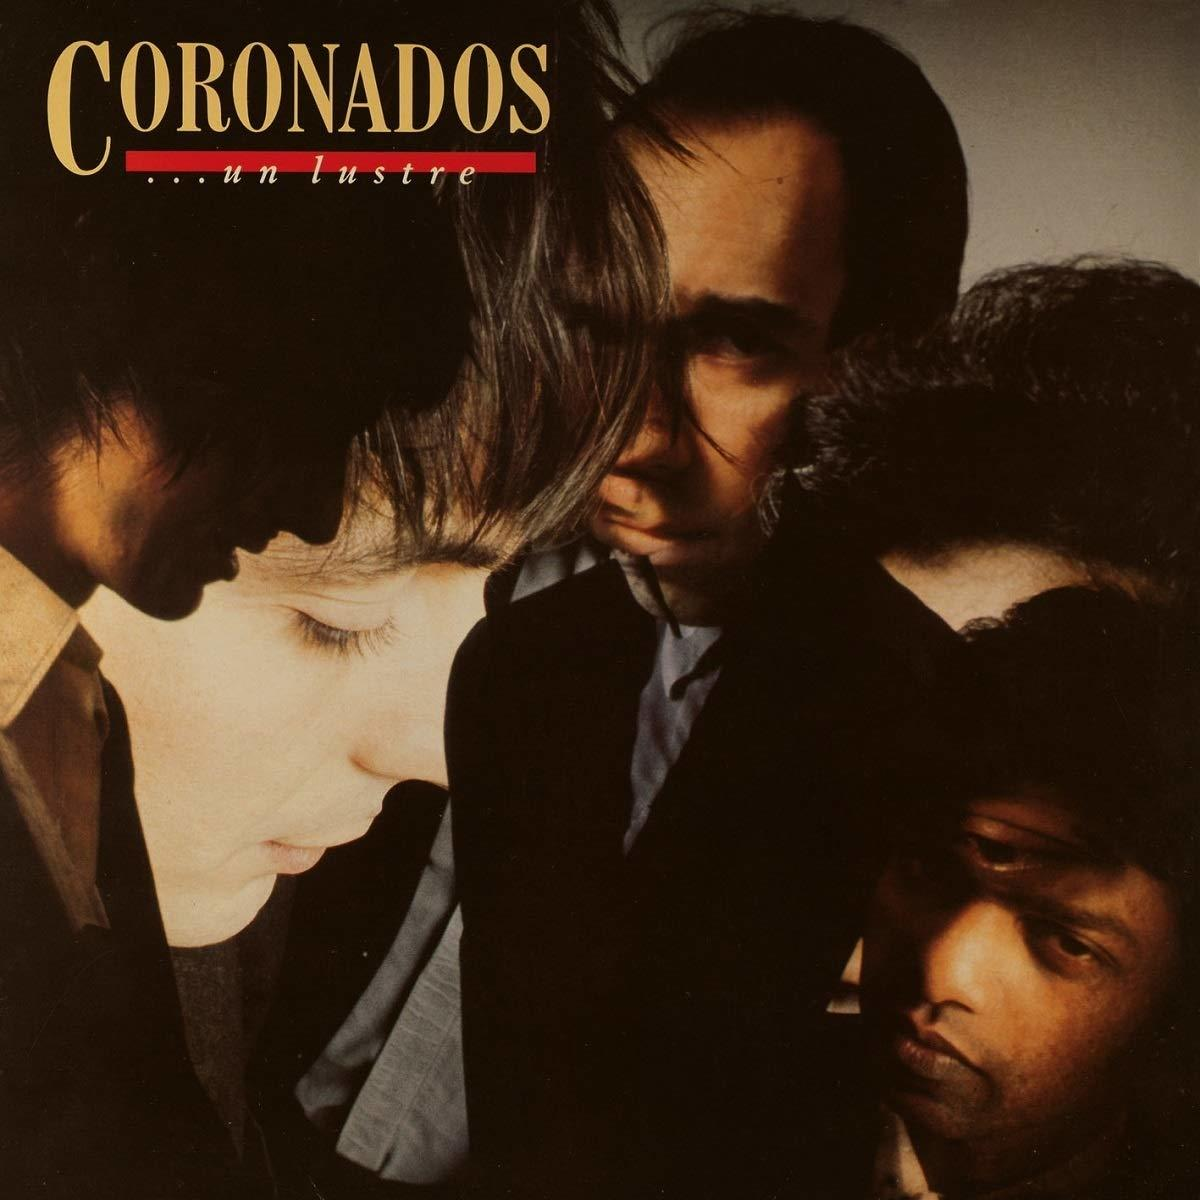 The Coronados - UN LUSTRE - (Vinyl)